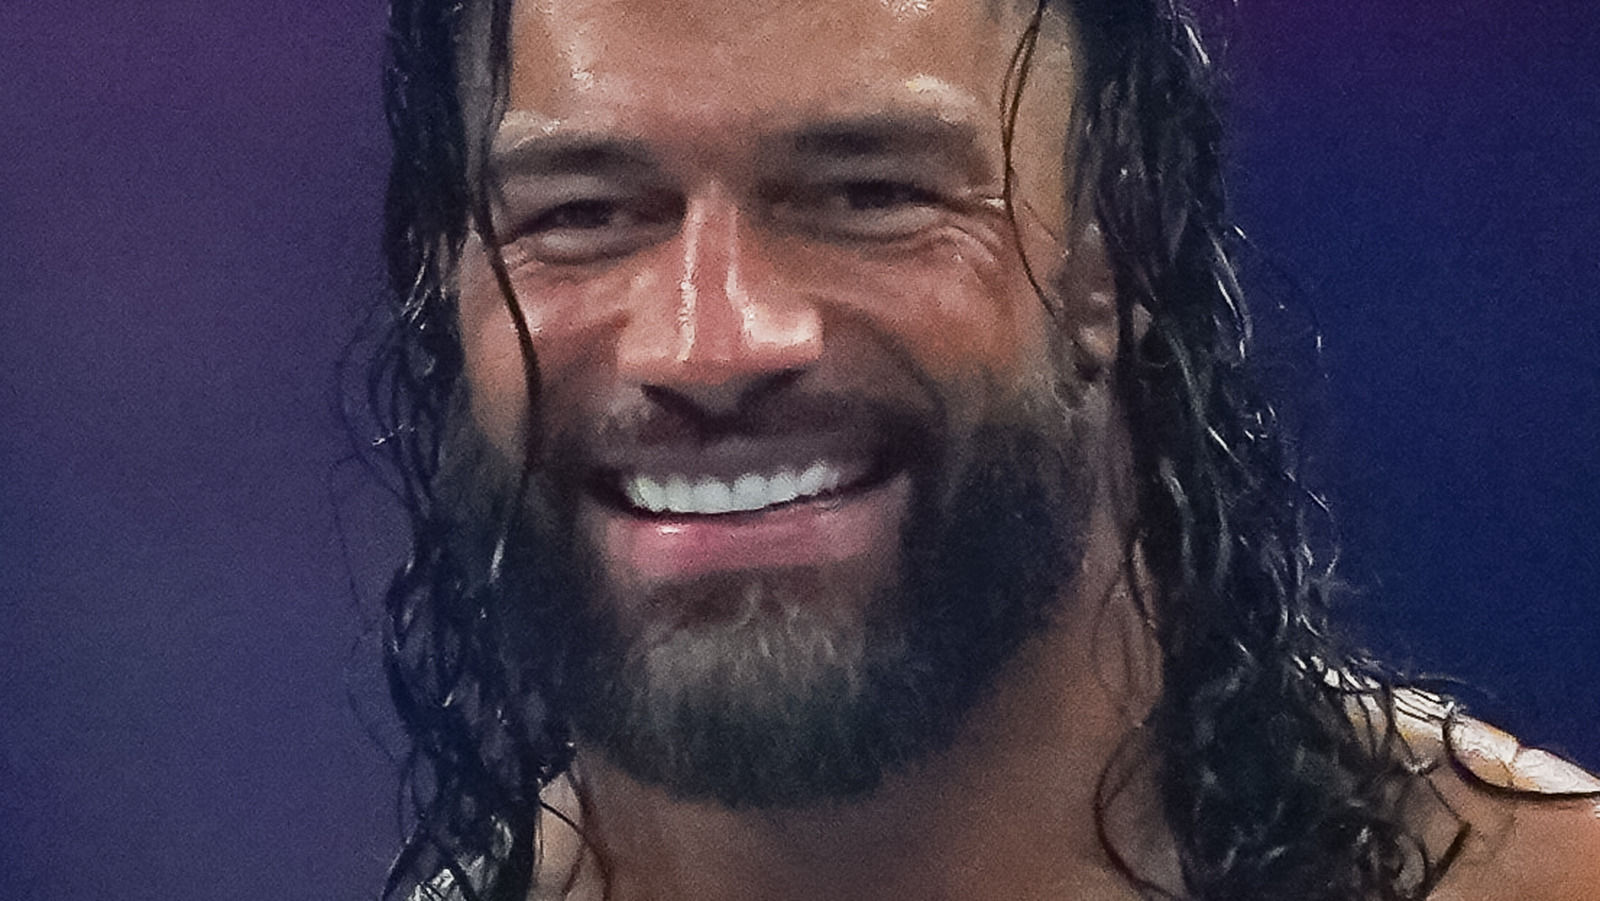 Noticias tras bambalinas sobre cómo Roman Reigns es visto internamente por WWE